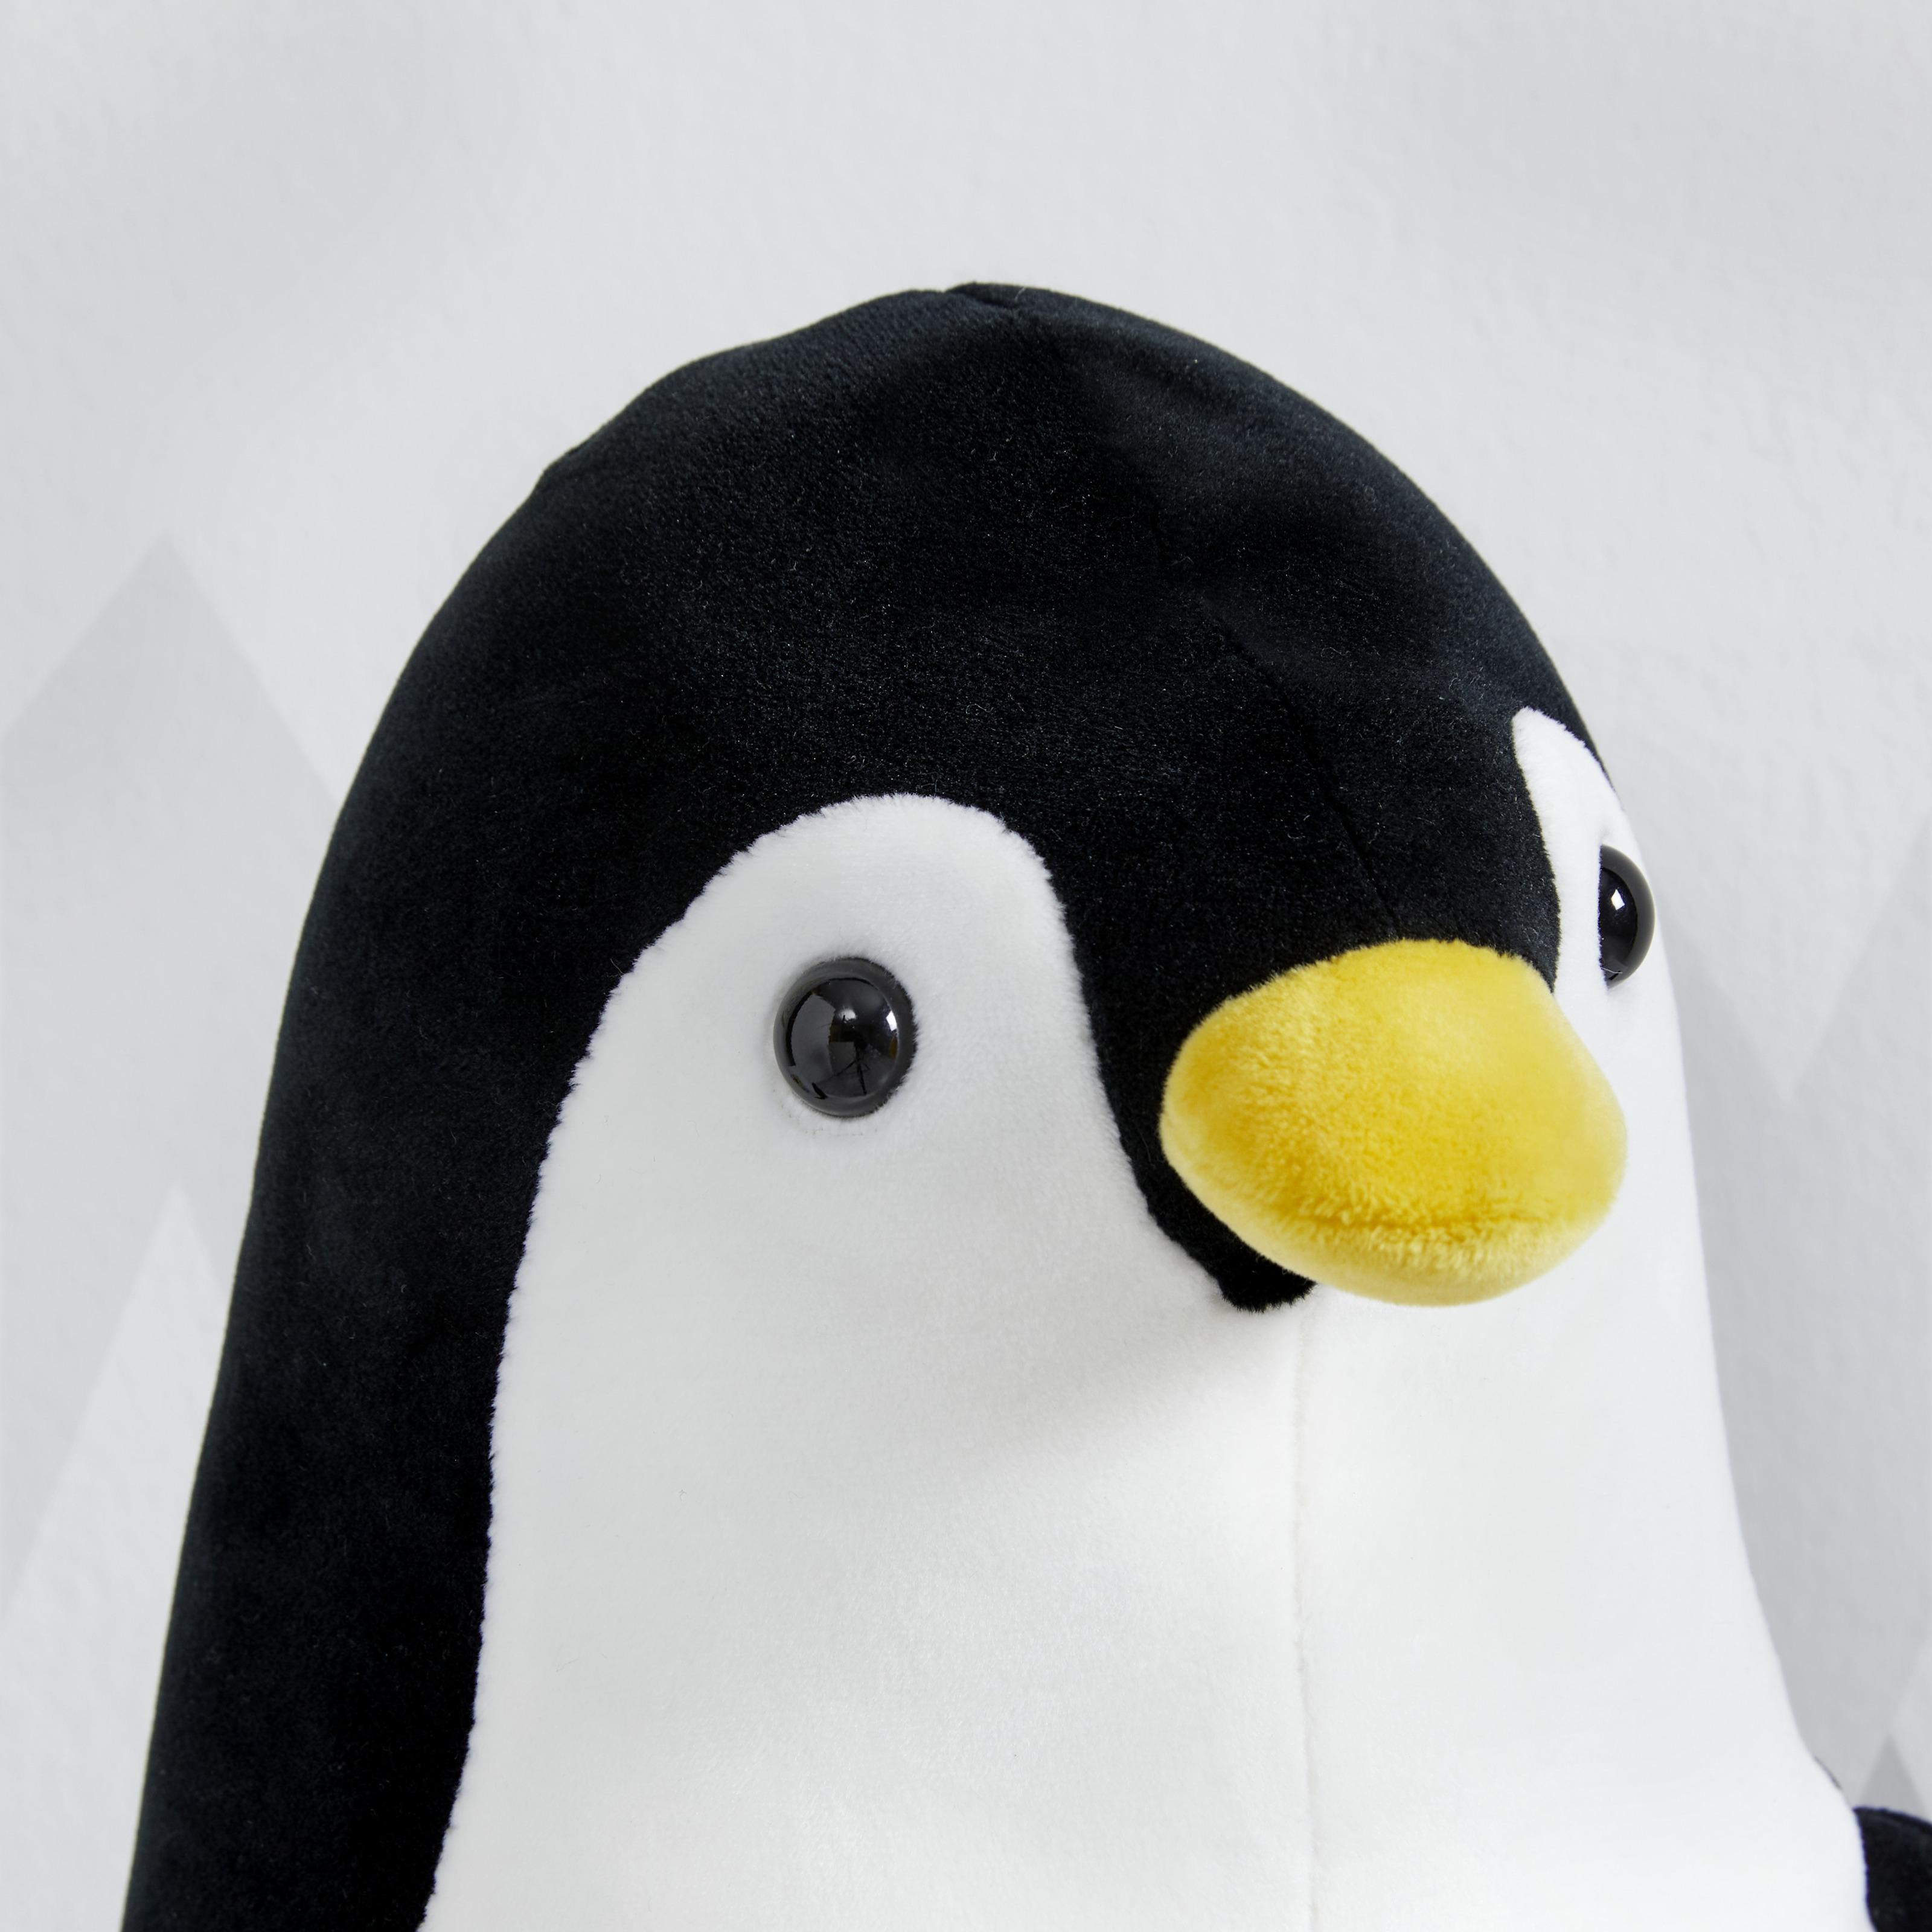 Plüschtier Jessy Pinguin - Schwarz/Weiß, MODERN, Textil (18/42cm) - Bessagi Kids